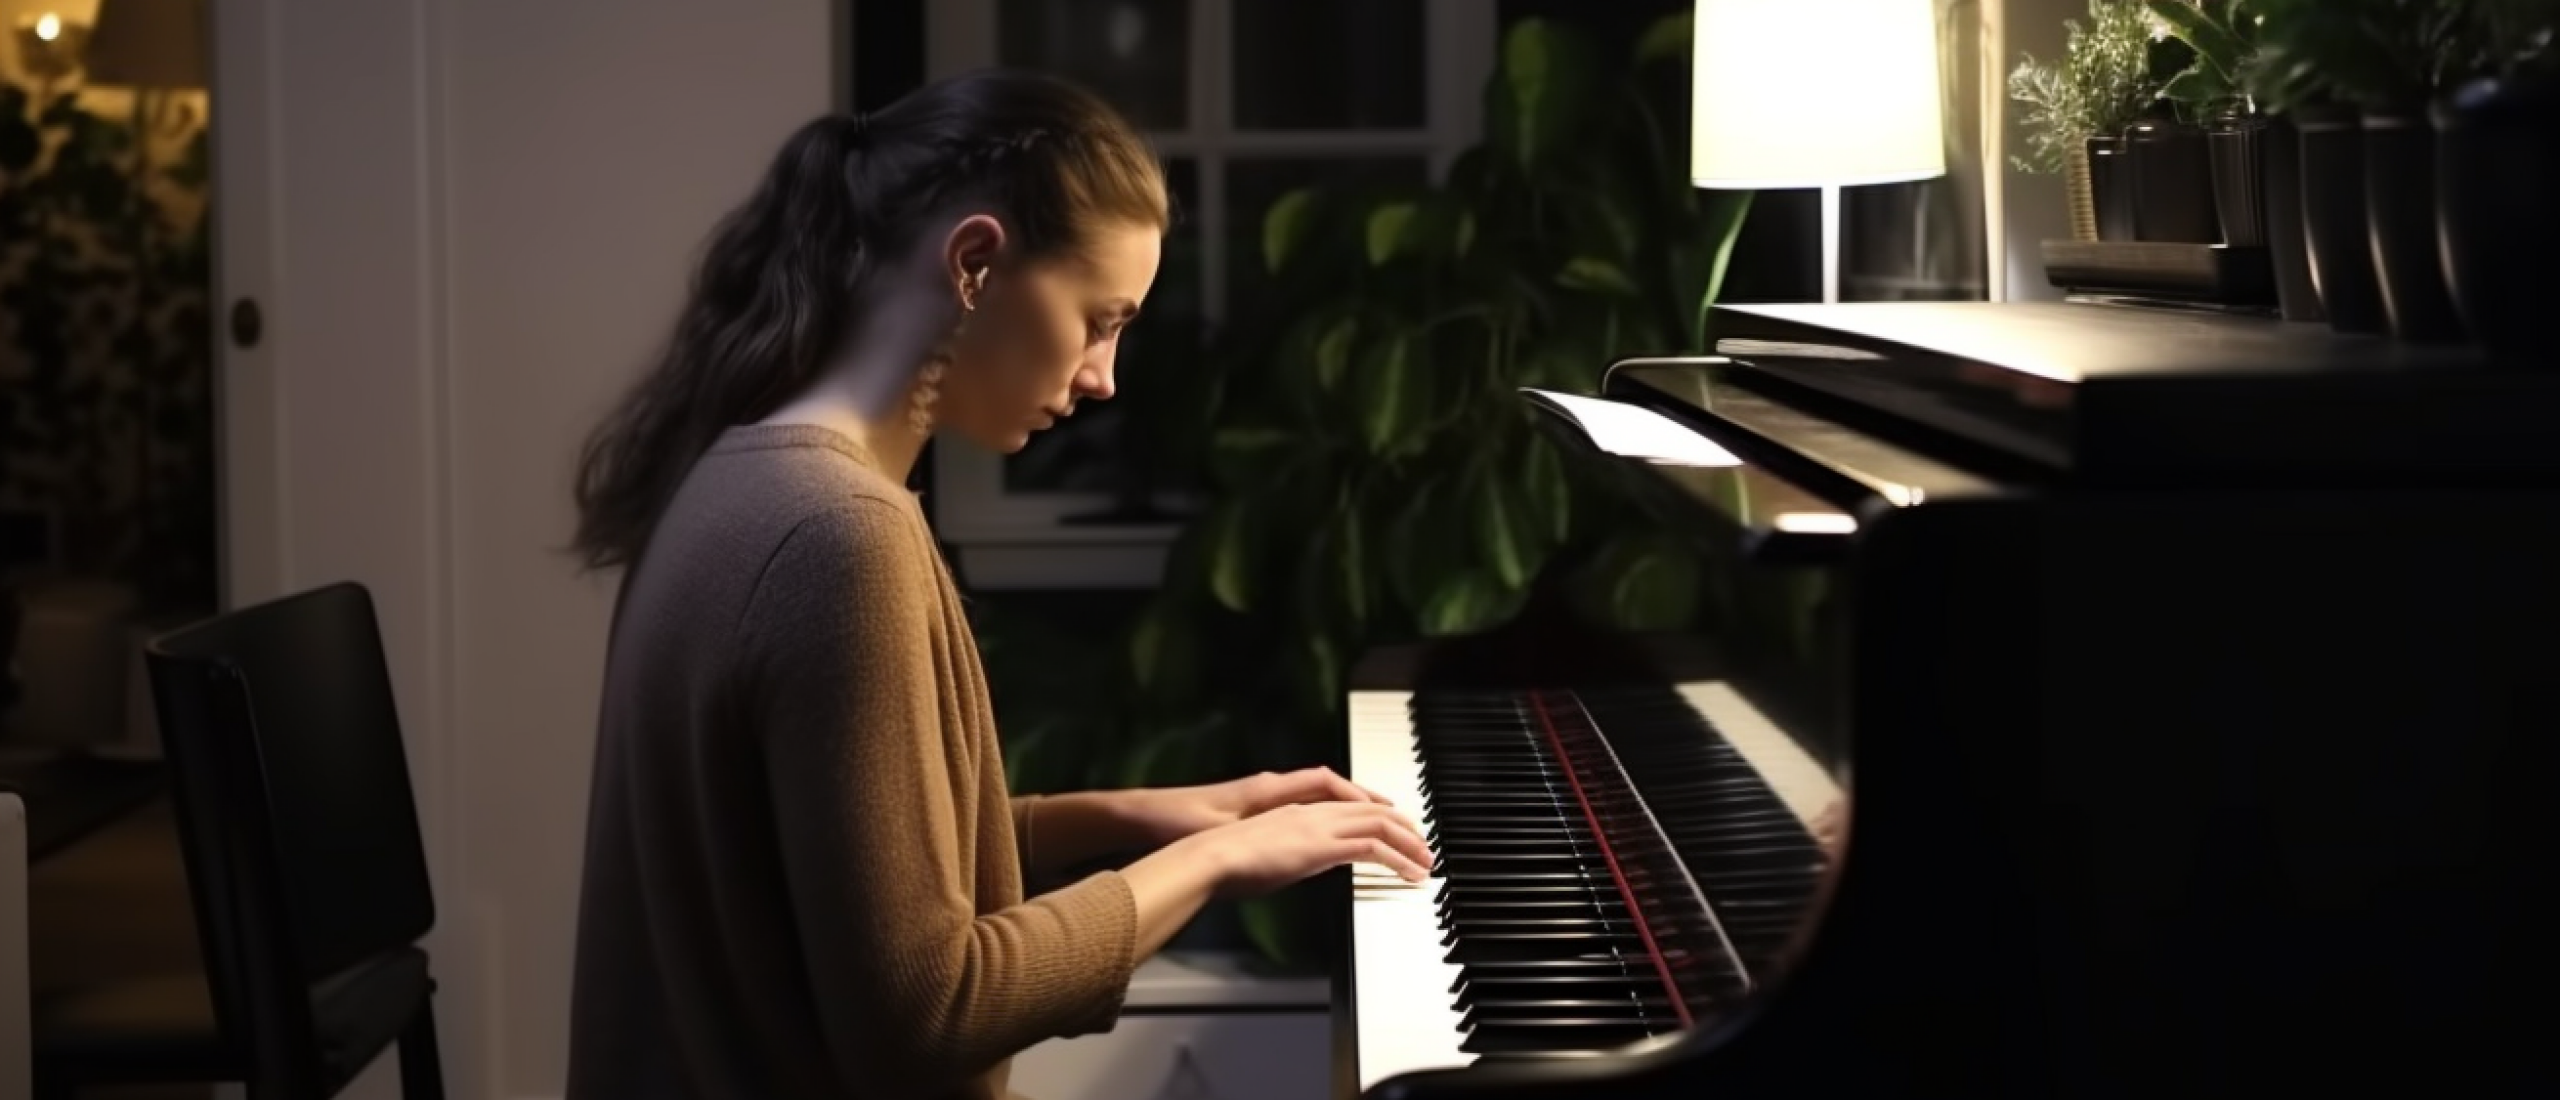 Hoe kun je je pianospel verbeteren met behulp van techniek? - Effectieve tips en oefeningen